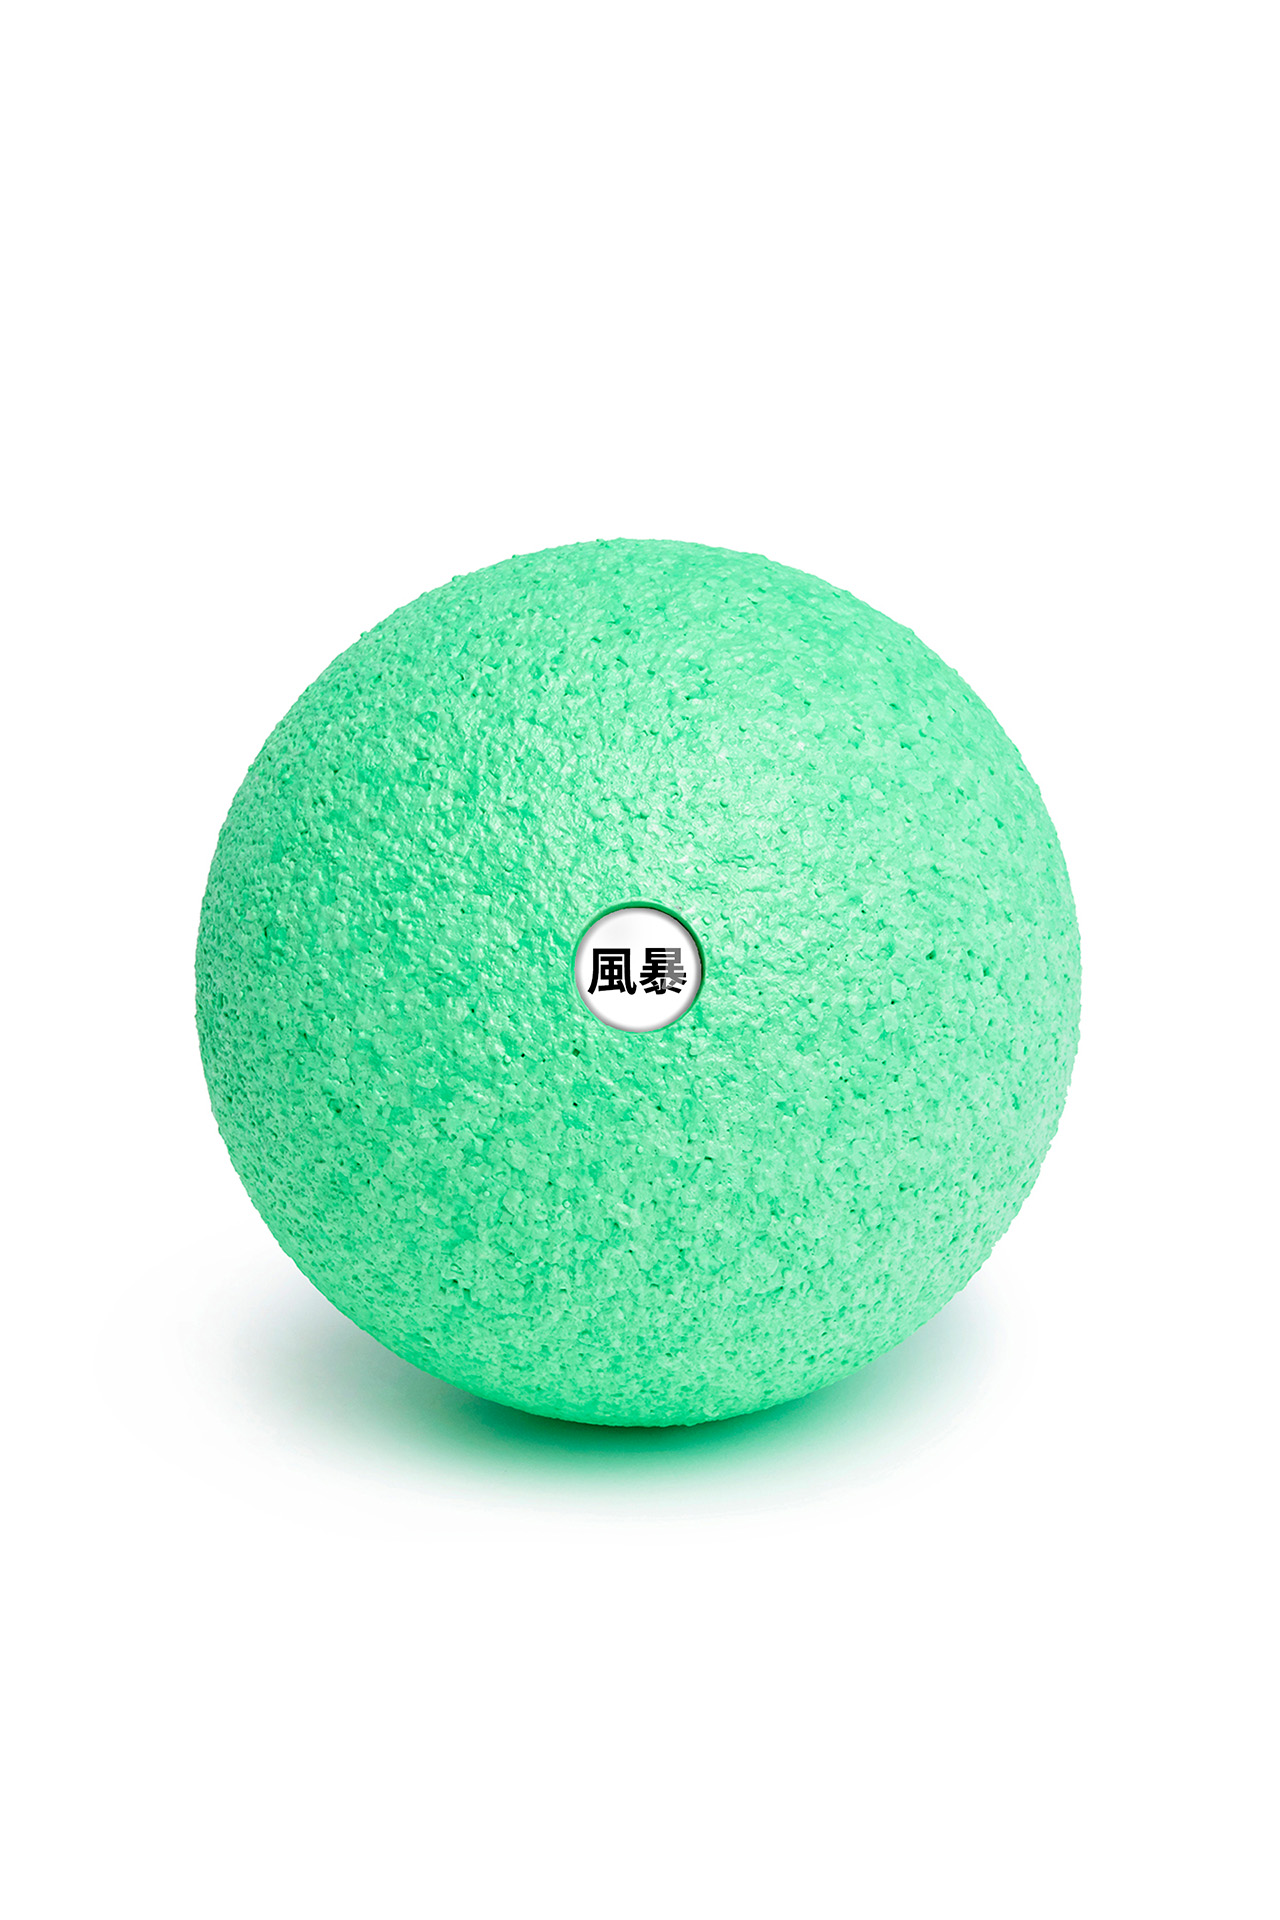 blackroll ball 12cm fengbao kung fu shop wien 1080 ball chinesisch gruen green